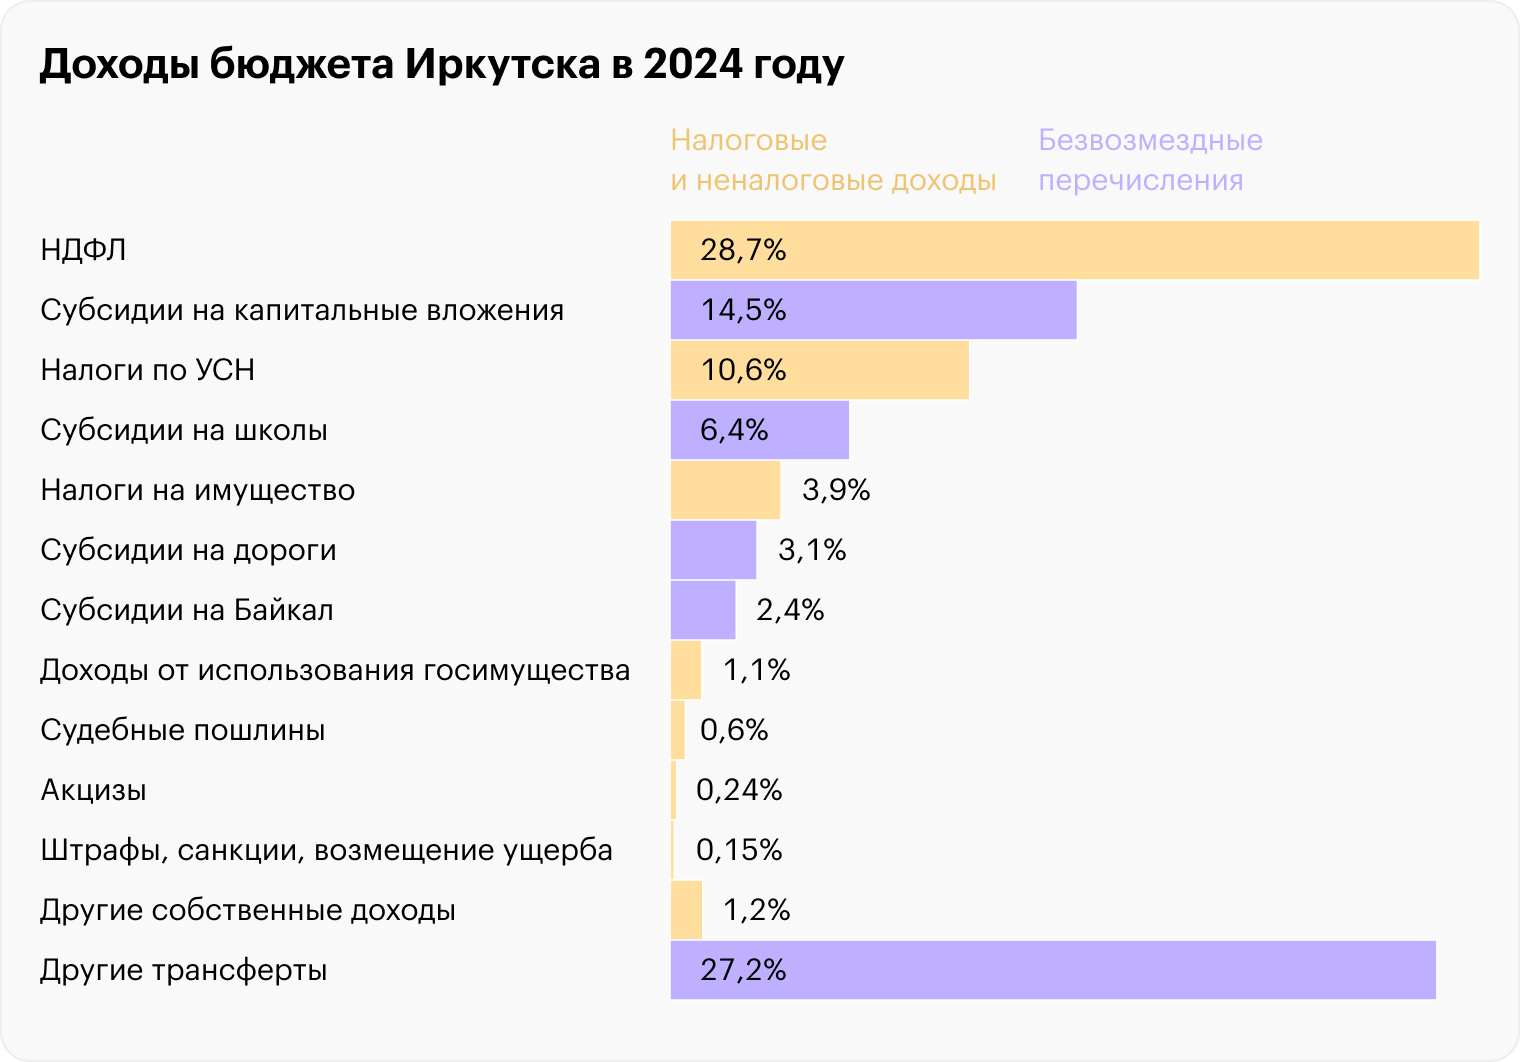 Так распределяются доходы бюджета Иркутска в 2024 году. Источник: решение Думы города Иркутска от 15.11.2023 № 007⁠-⁠20⁠-⁠056744/3